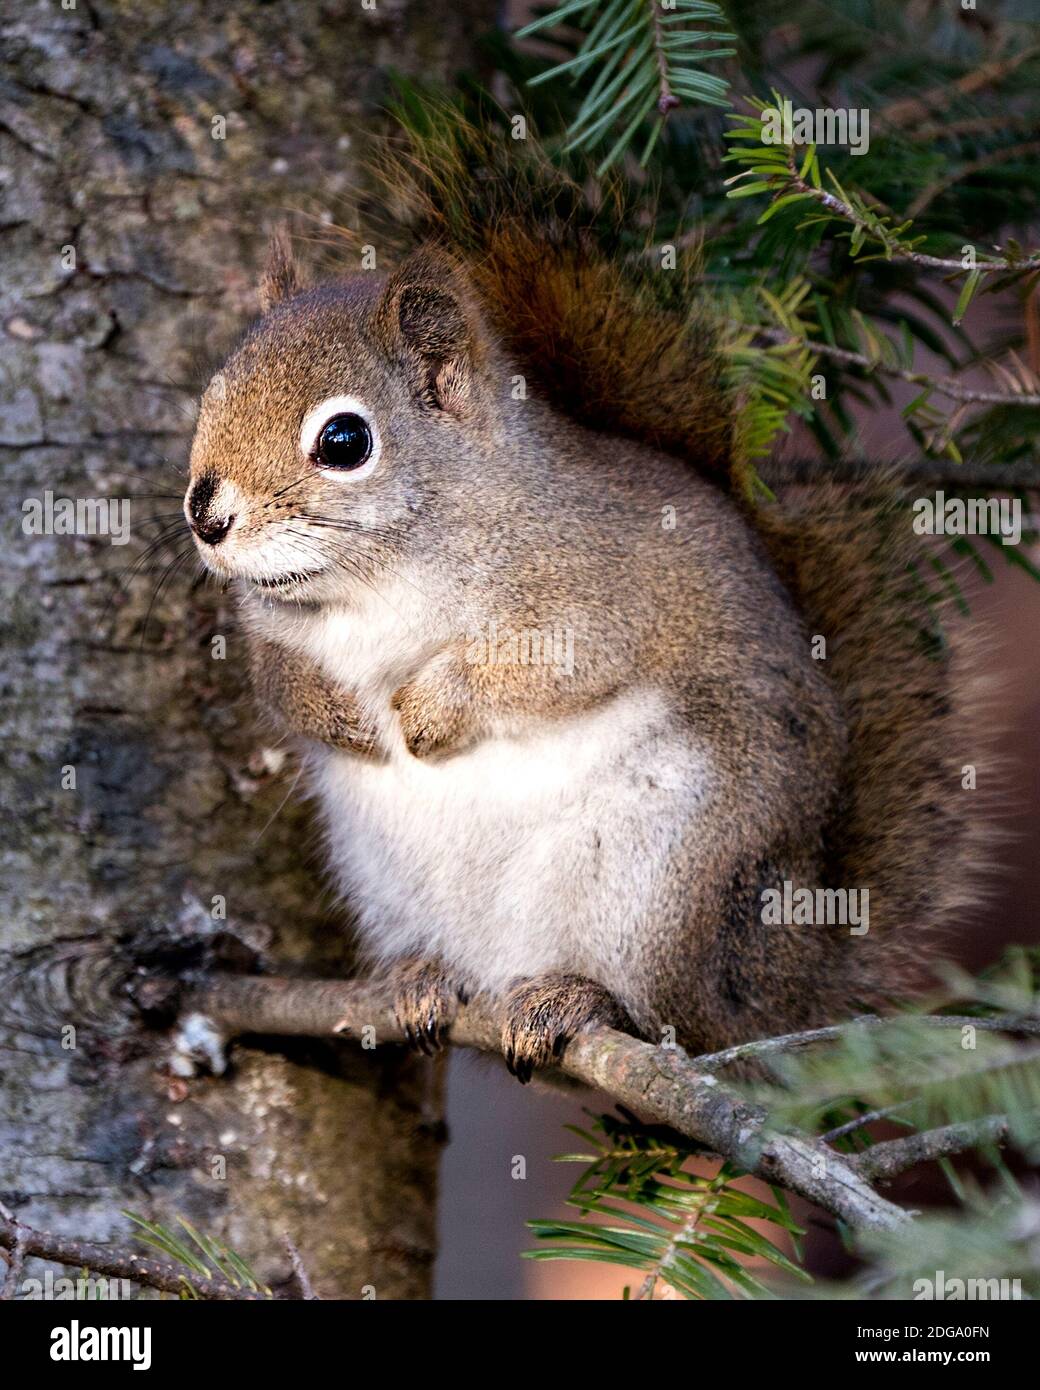 Eichhörnchen Nahaufnahme Profilansicht im Wald sitzt auf einem Ast Baum mit verschwommenem Hintergrund zeigt seine braunen Fell, Kopf, Augen, Nase, Ohren, Pfoten, Bus Stockfoto